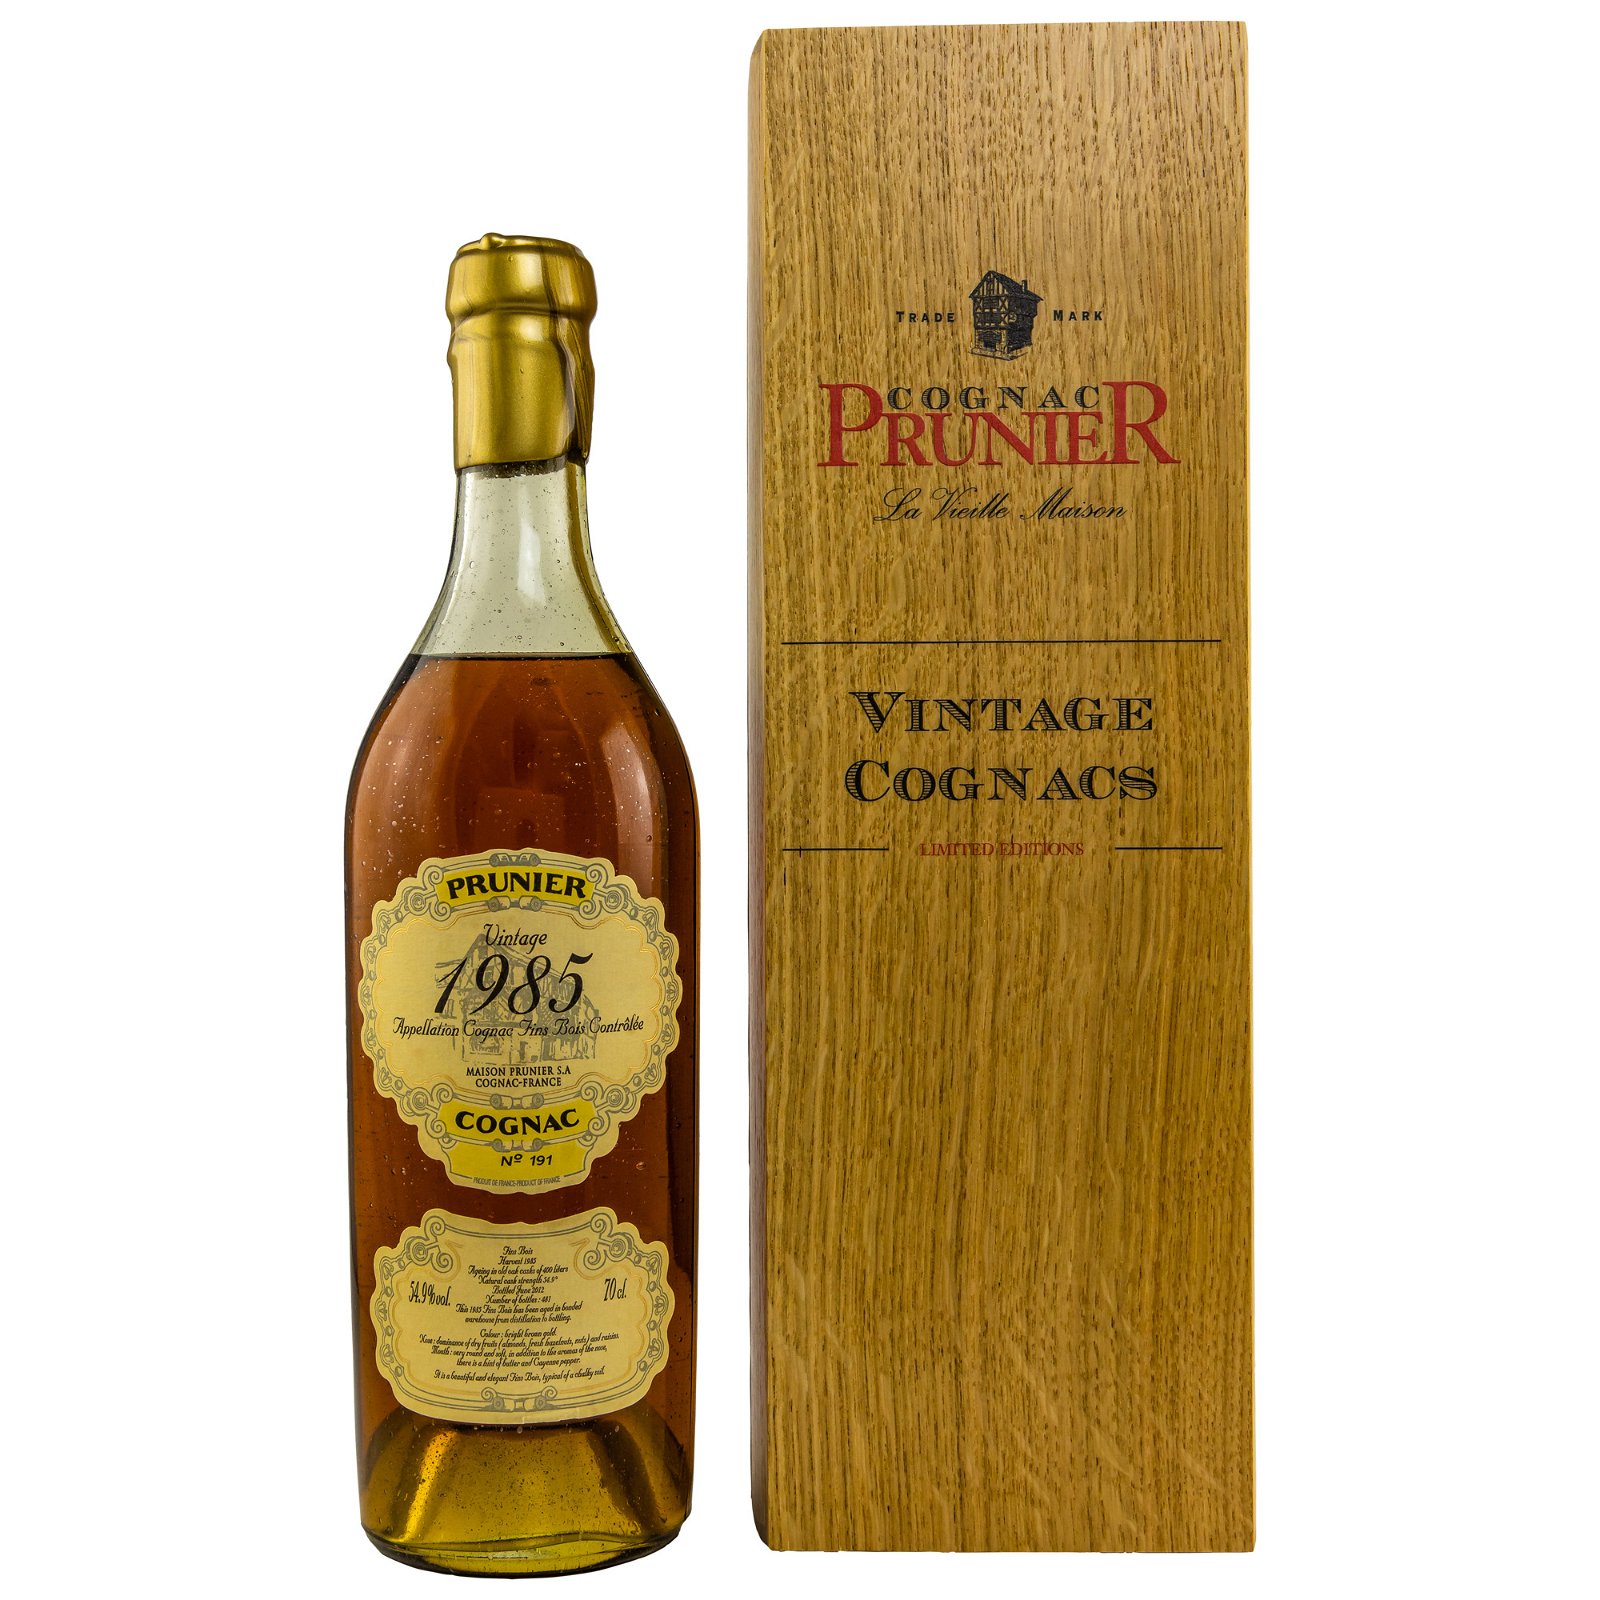 Prunier 1985/2012 Fins Bois Cognac (Vintage Cognacs)